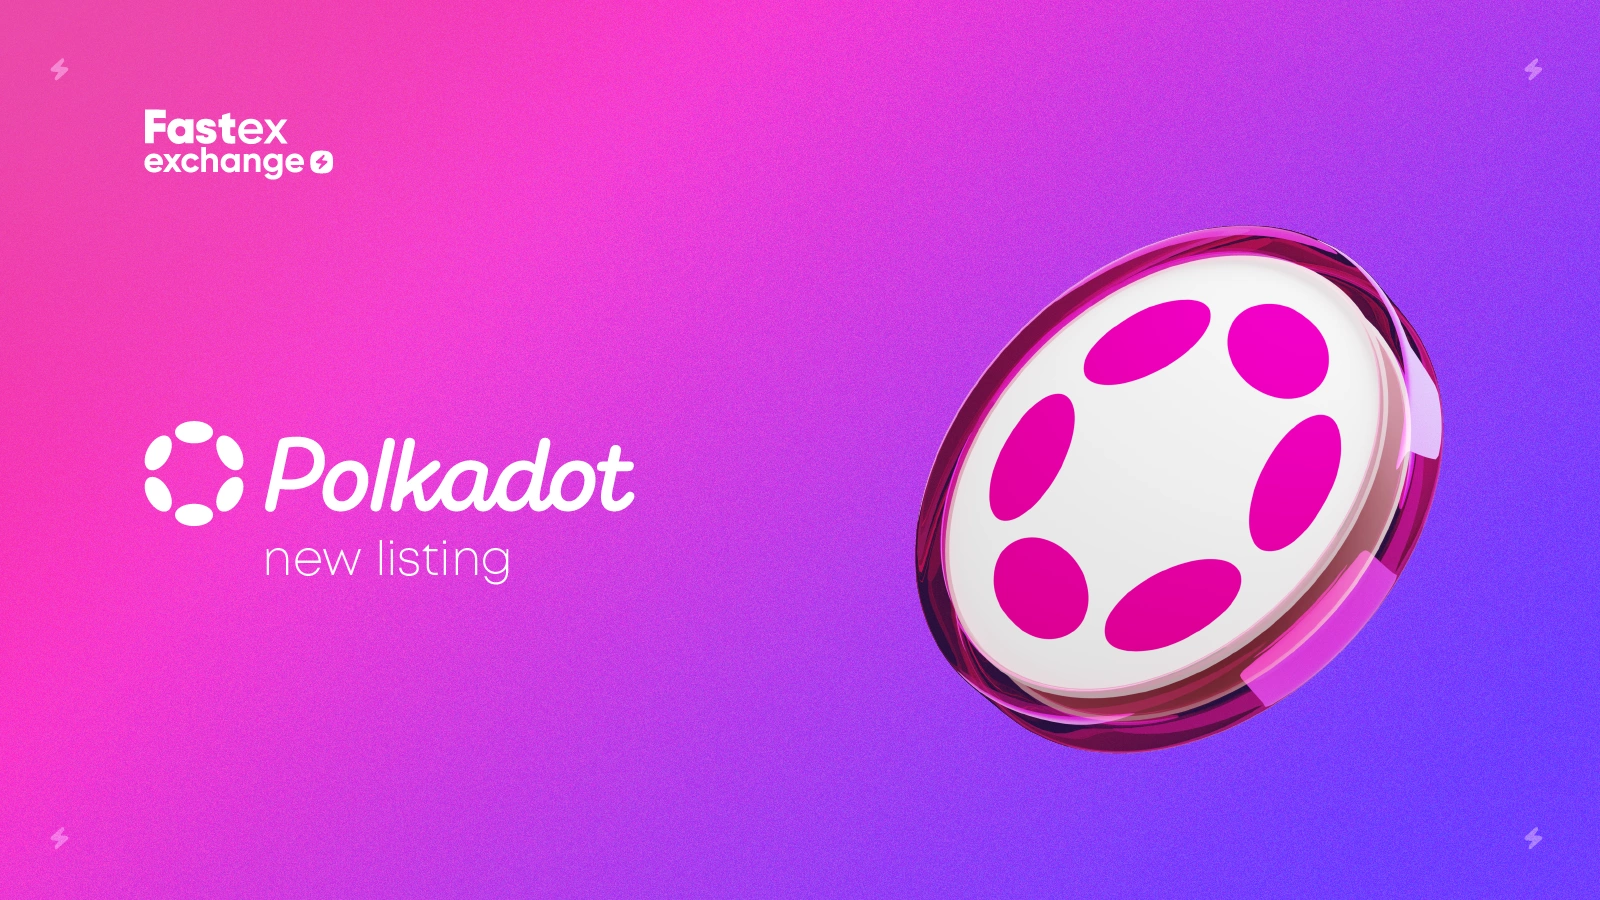 Nova lista da Fastex Exchange: Polkadot (DOT)